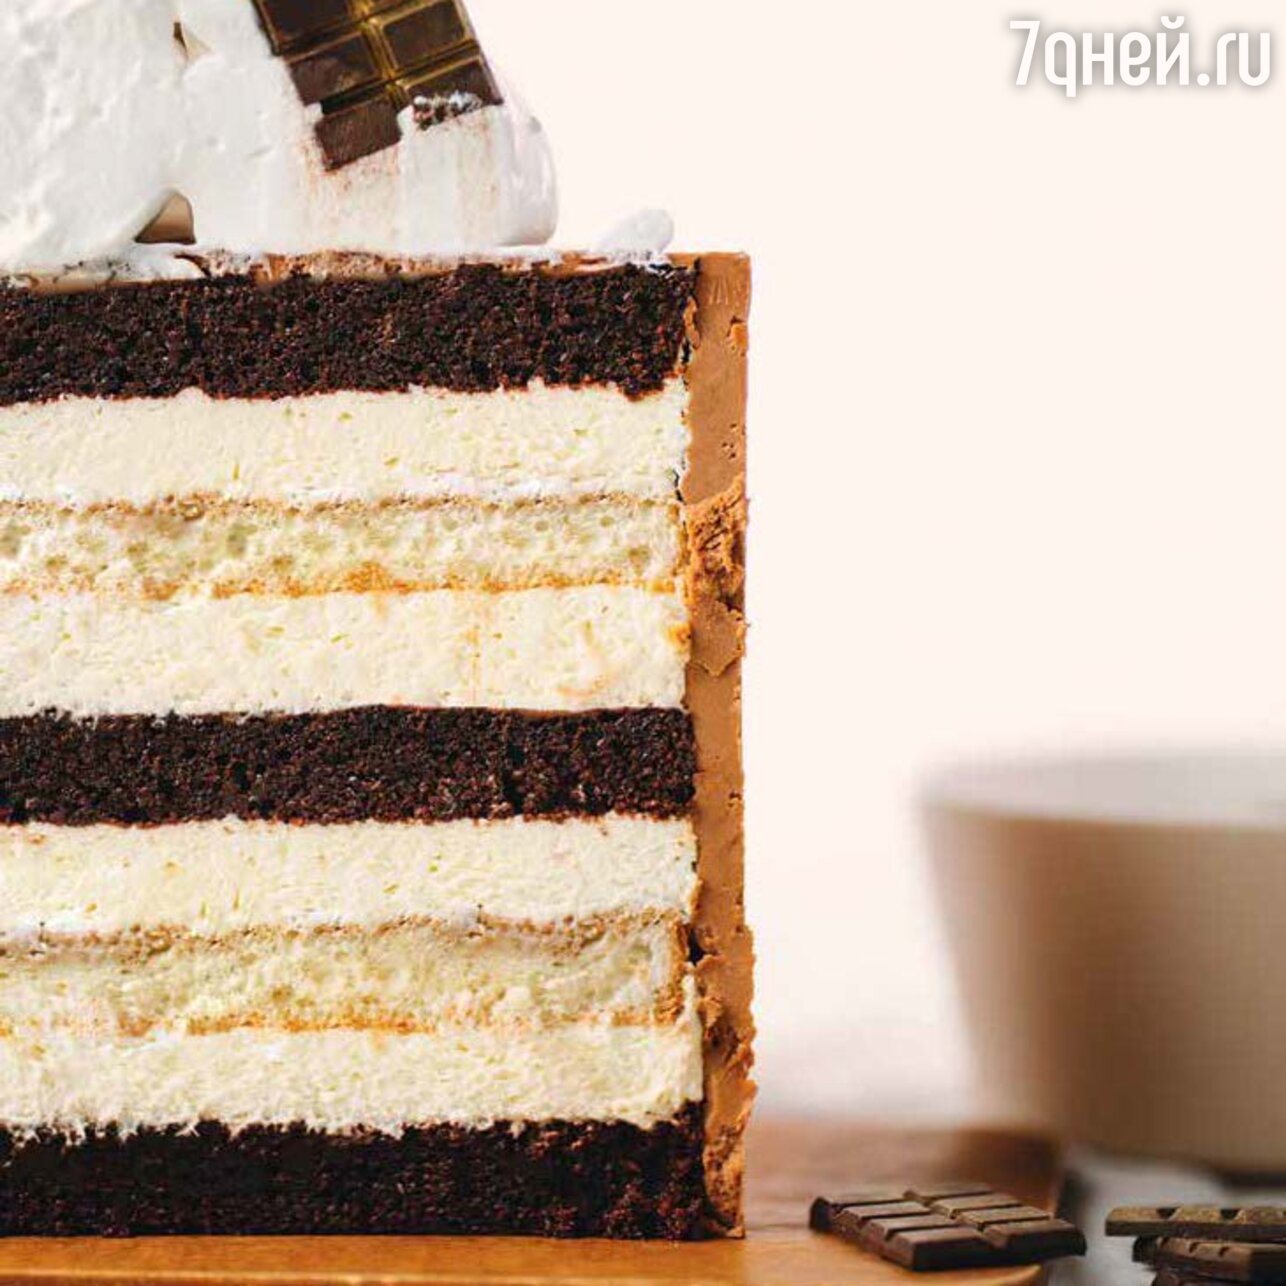 Торт «Тирамису»: рецепт потрясающего новогоднего десерта. фото